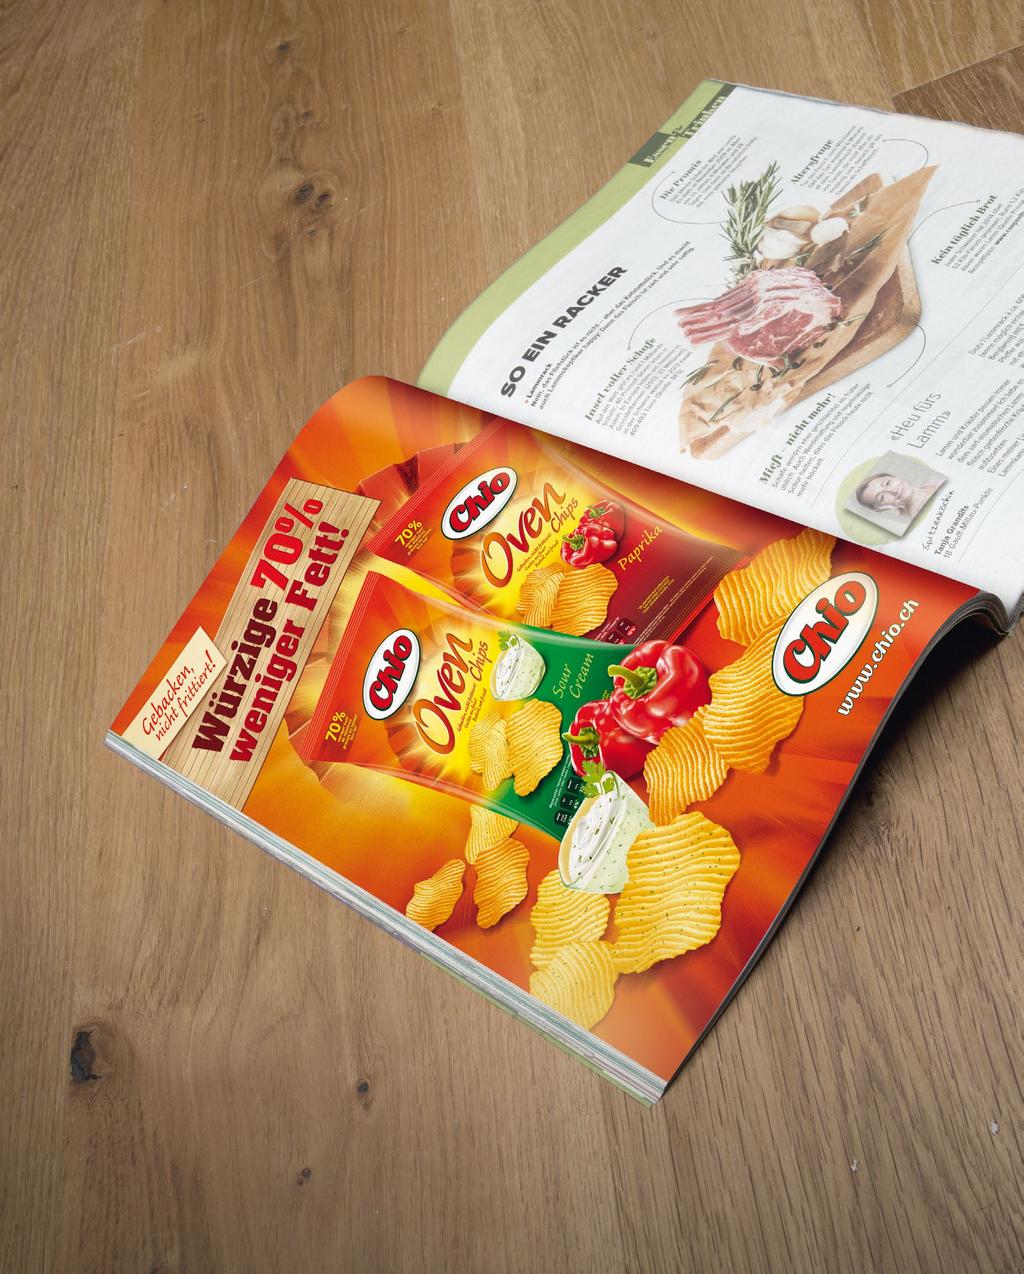 «Oven Chips» von Chio revolutioniert den Markt mit 70% weniger Fett.